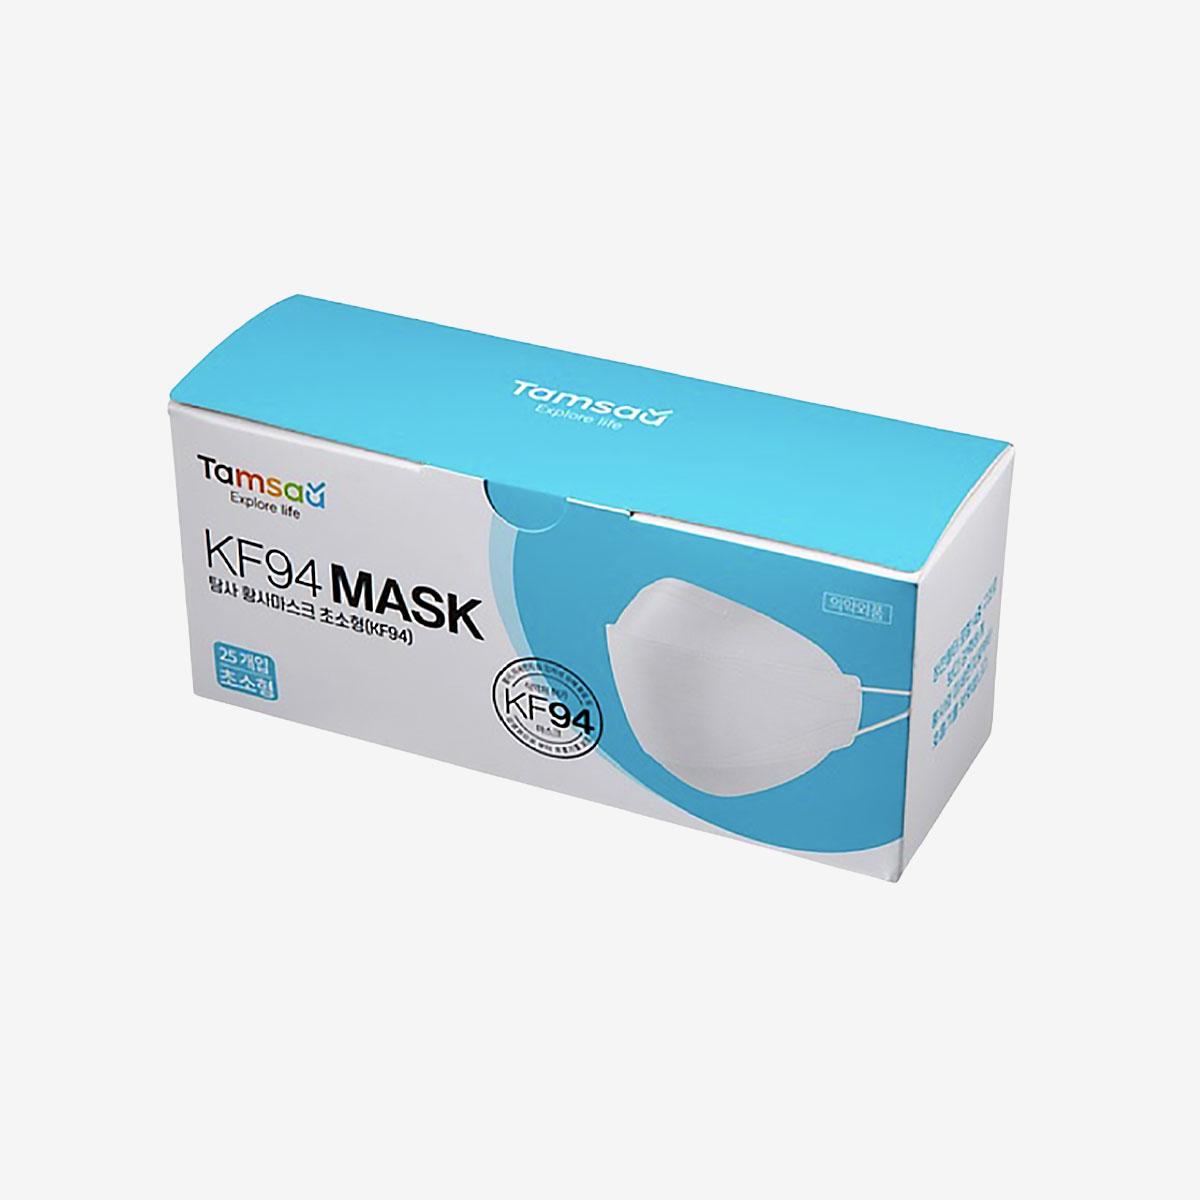 KF94 Mask (25 Sheets) (Small)